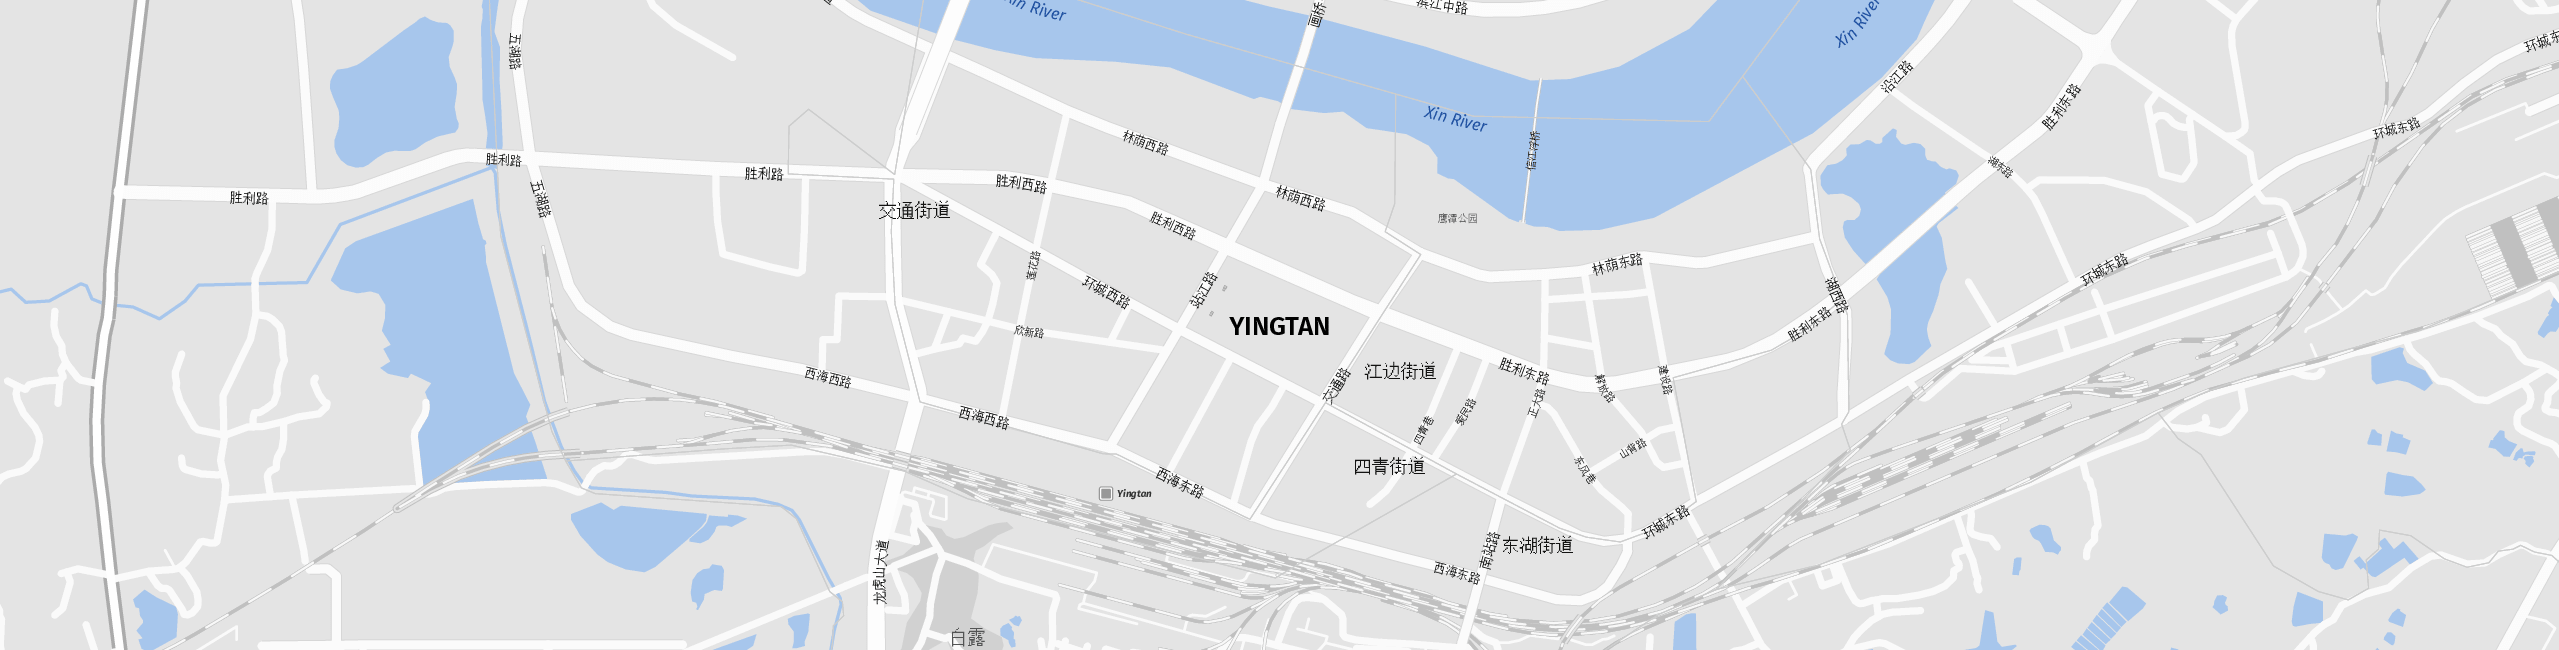 Stadtplan Yingtan zum Downloaden.